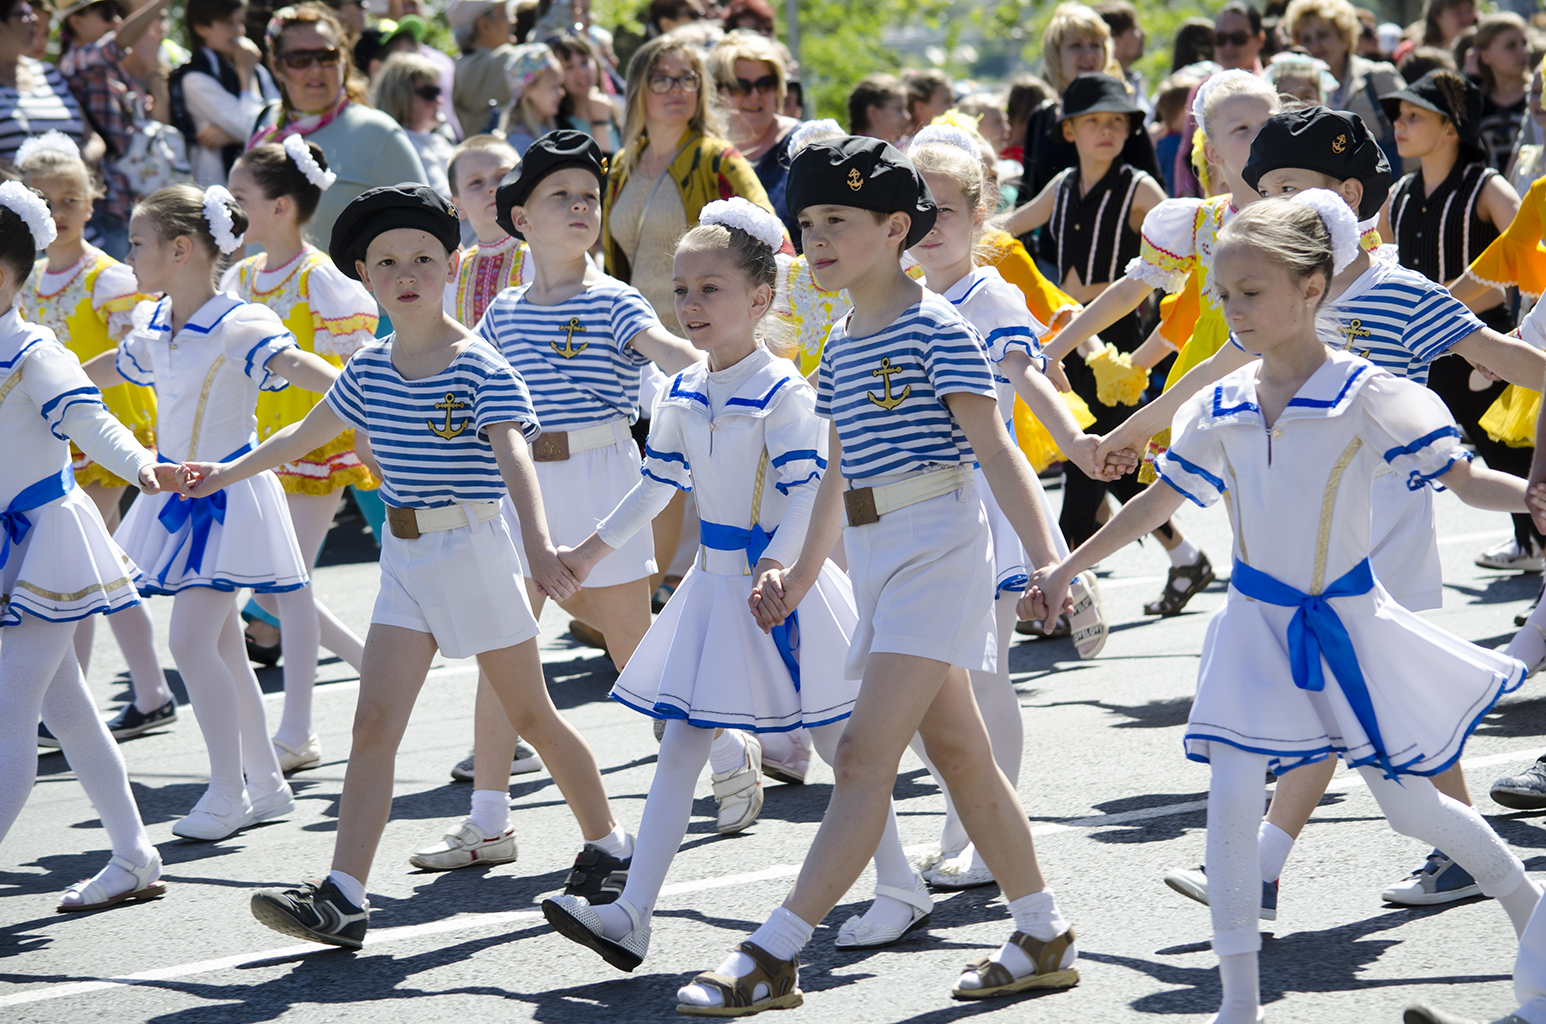 Севастополь отметил День пионерии многотысячным детским шествием